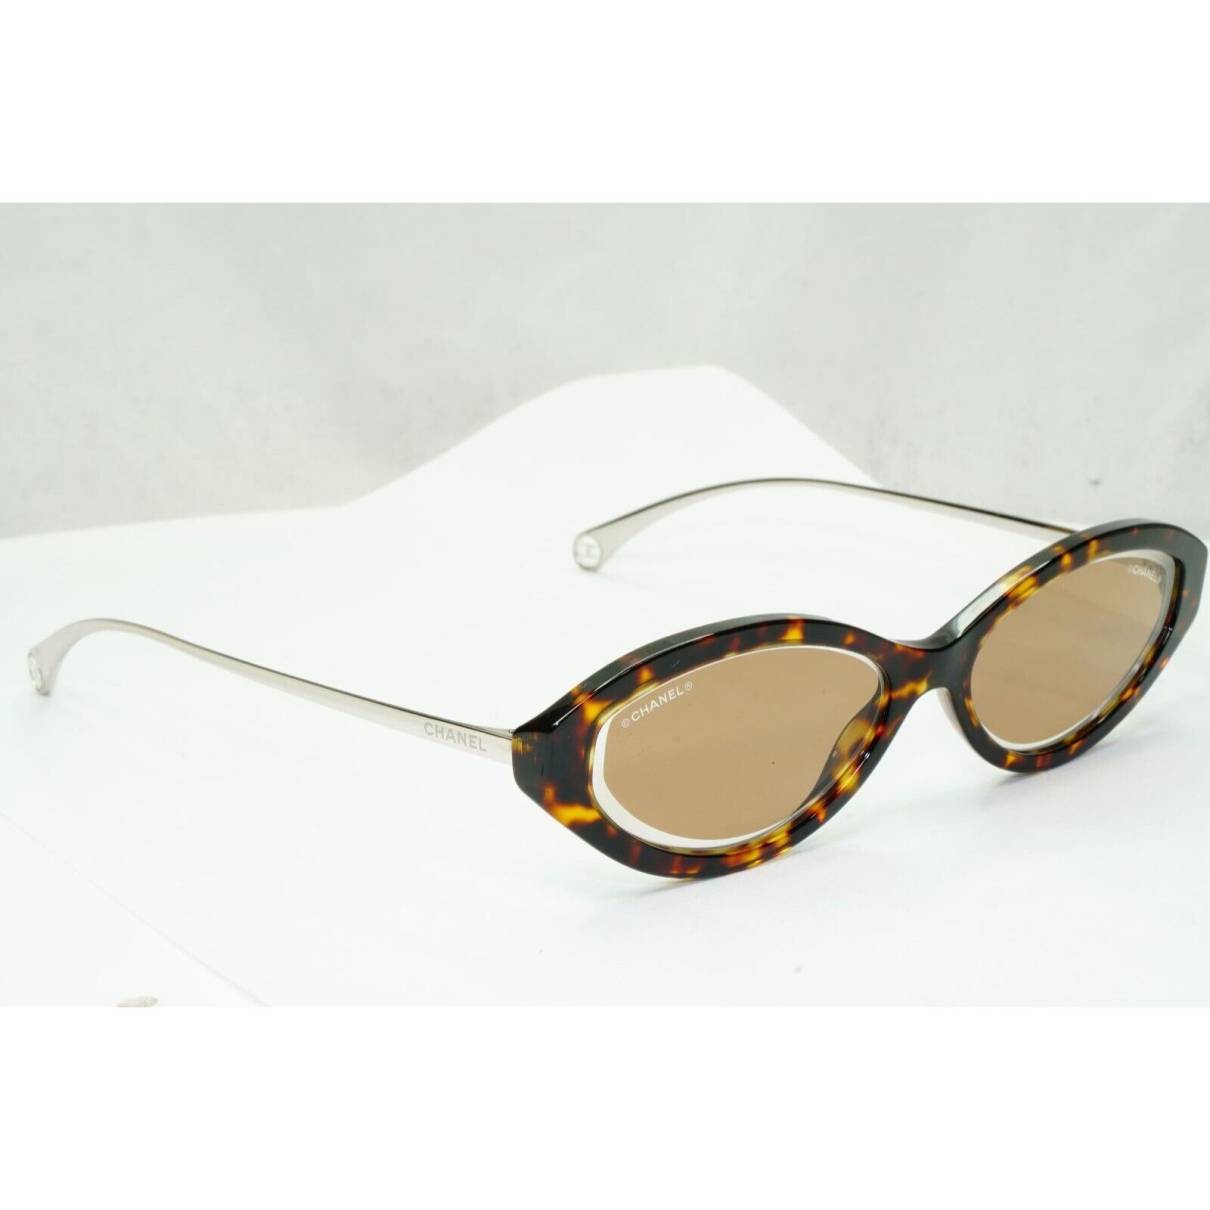 Sunglasses Chanel Brown in Plastic - 33723630